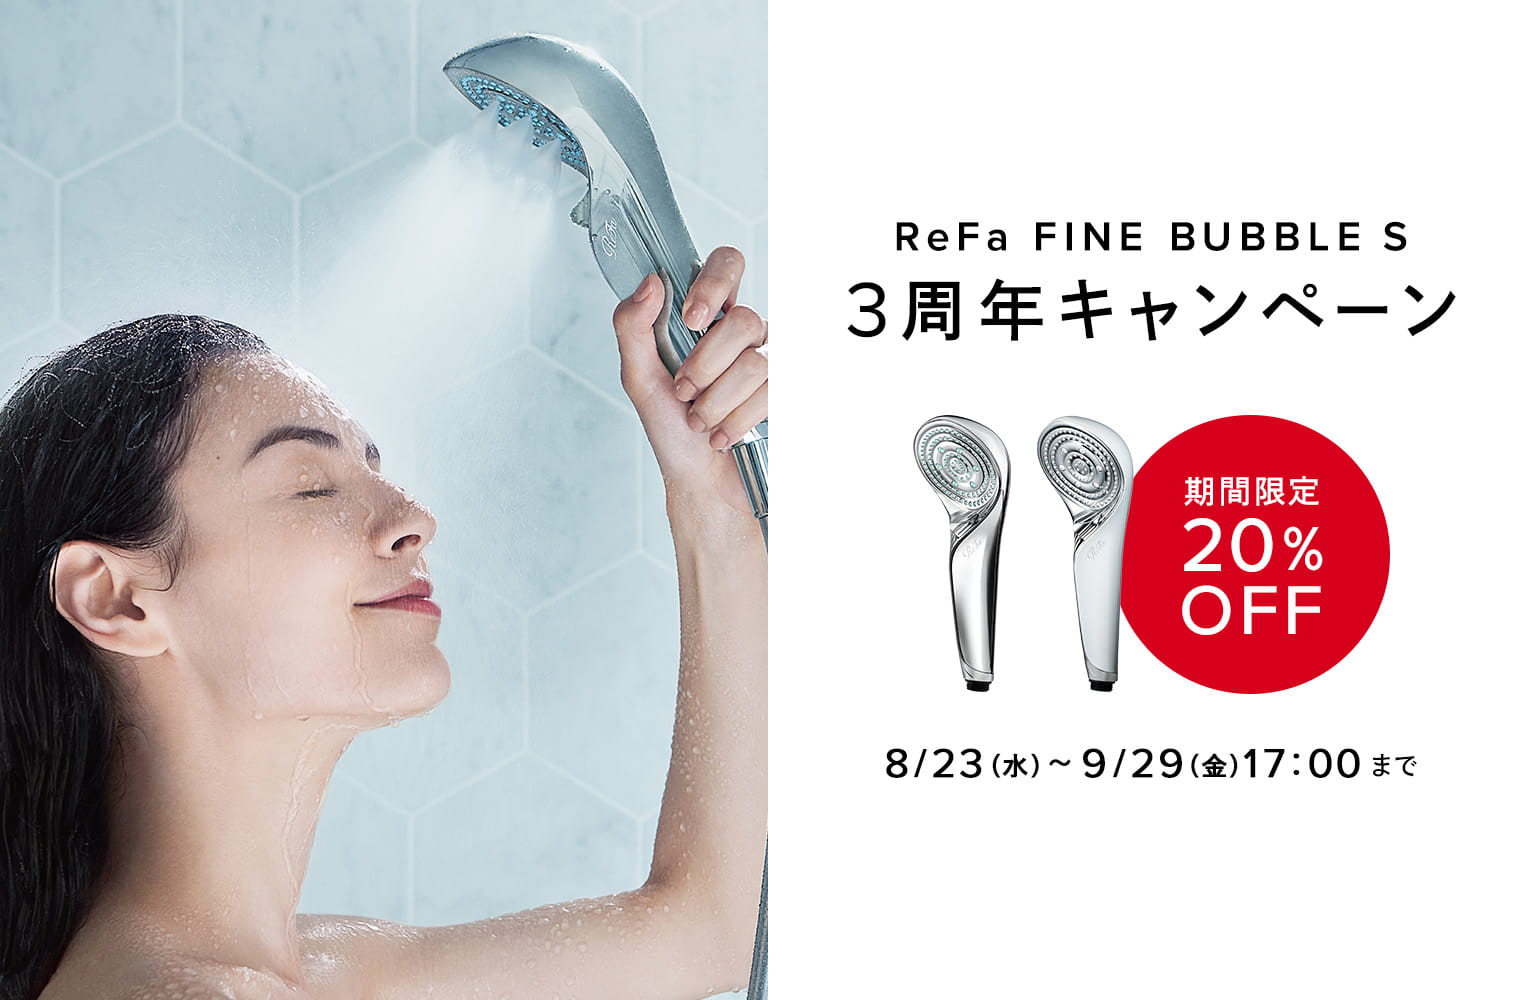 ReFa FINE BUBBLE S 3周年キャンペーン